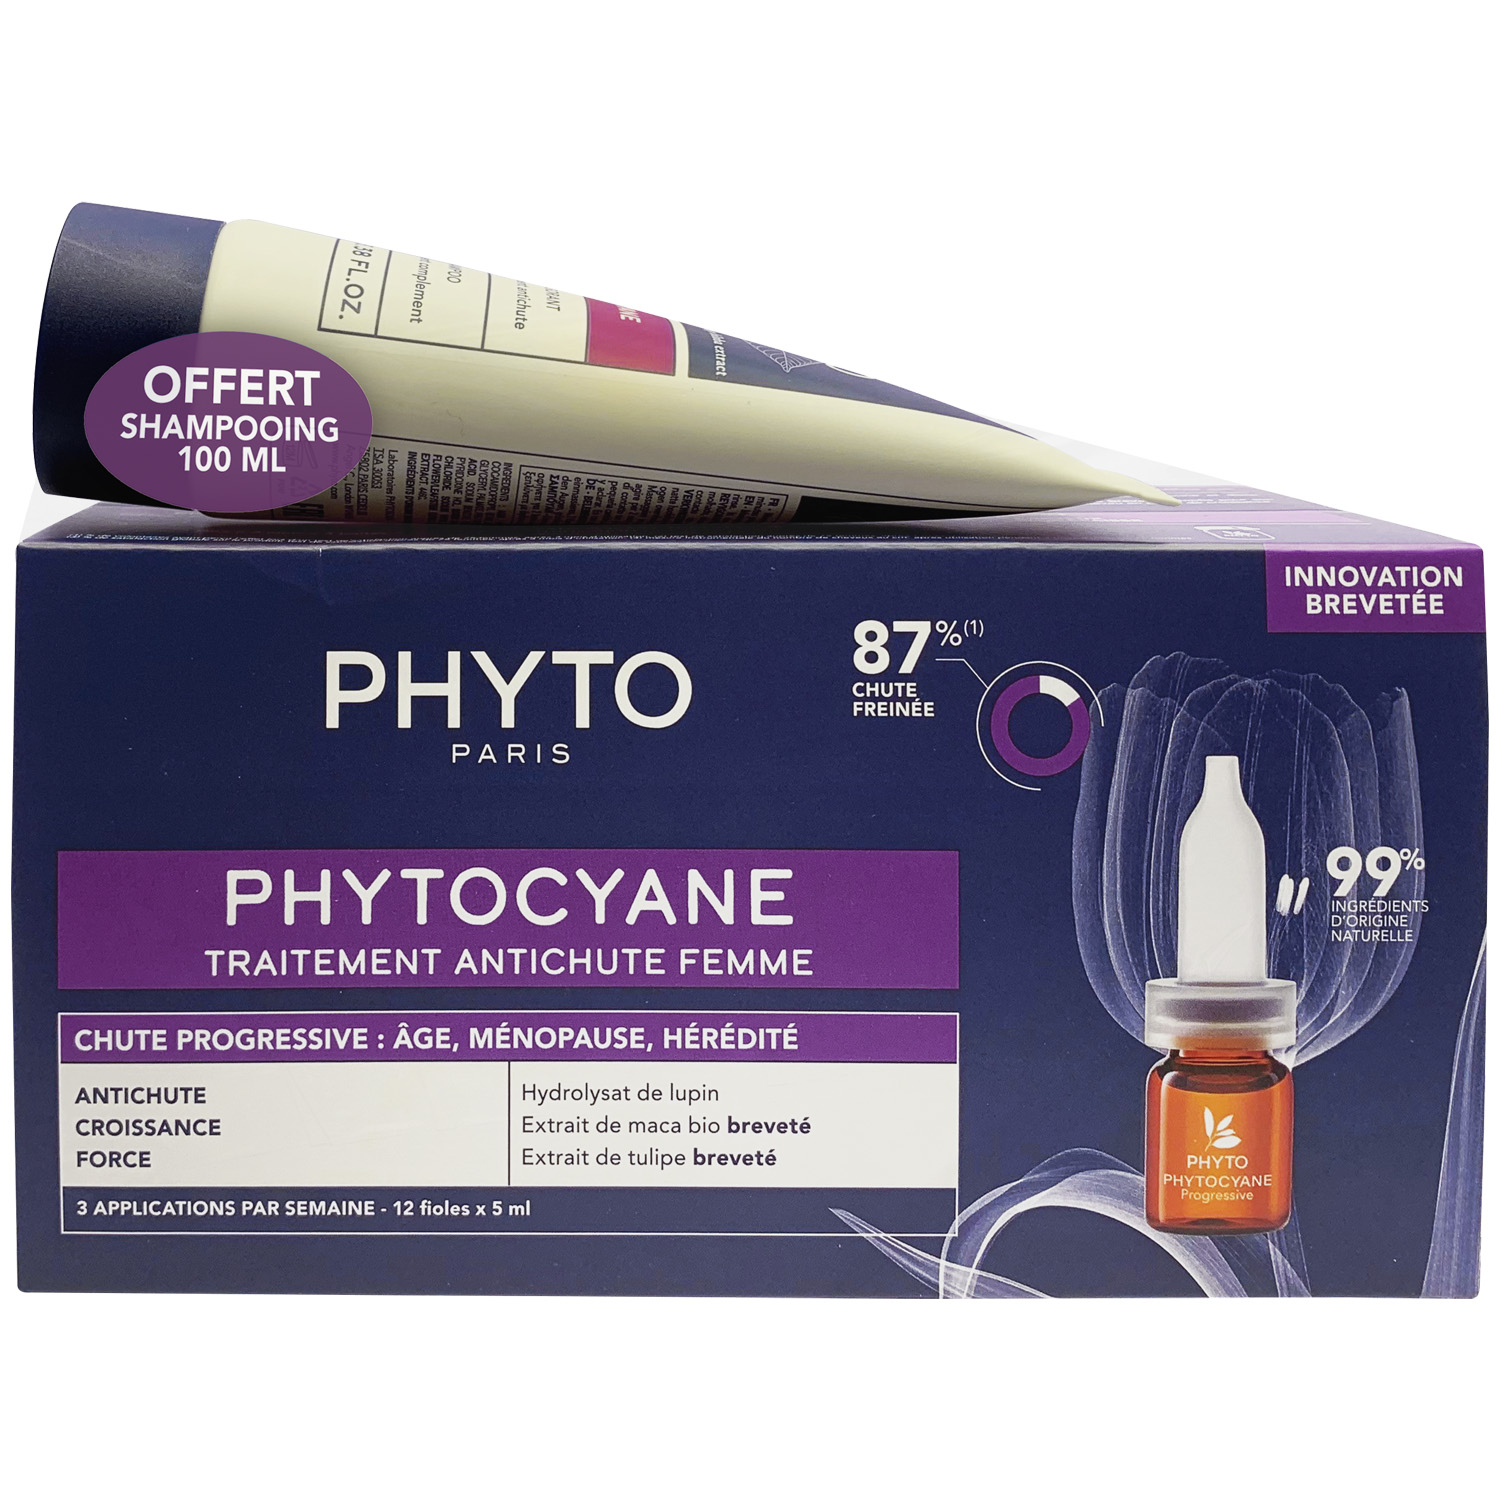 Phyto Набор для женщин: сыворотка от выпадения волос 12х 5мл + укрепляющий шампунь 100 мл (Phyto, Phytocyane) phyto набор для женщин сыворотка от выпадения волос 12х 5мл укрепляющий шампунь 100 мл phyto phytocyane